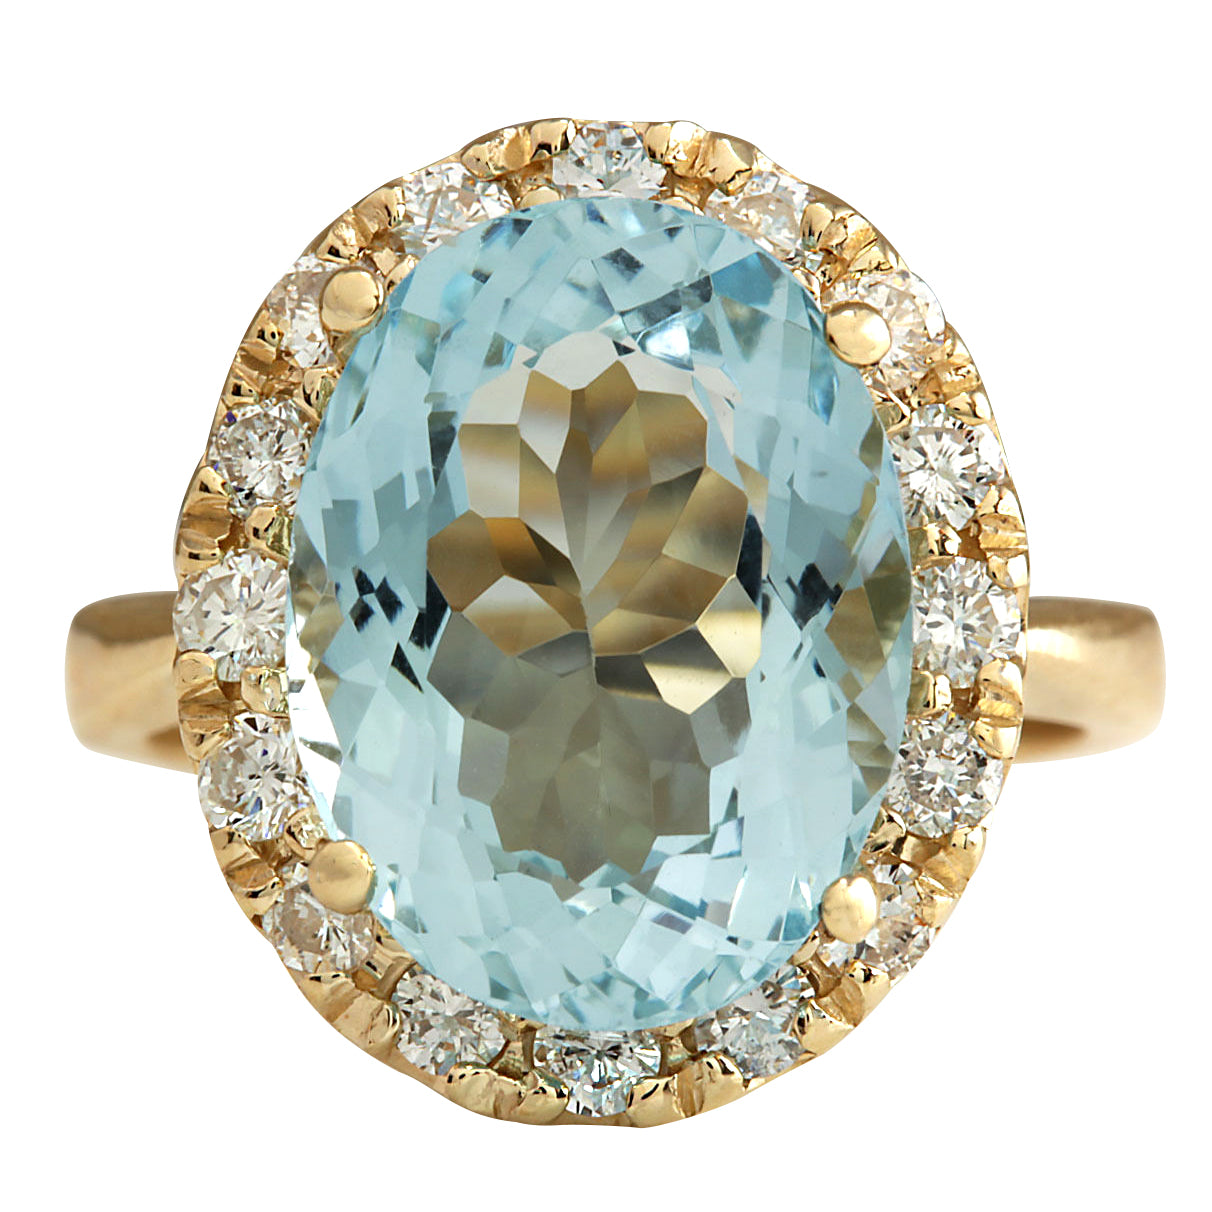 Simon G. 8.28ctw Aquamarine and Diamond Ring White Gold - State St. Jewelers